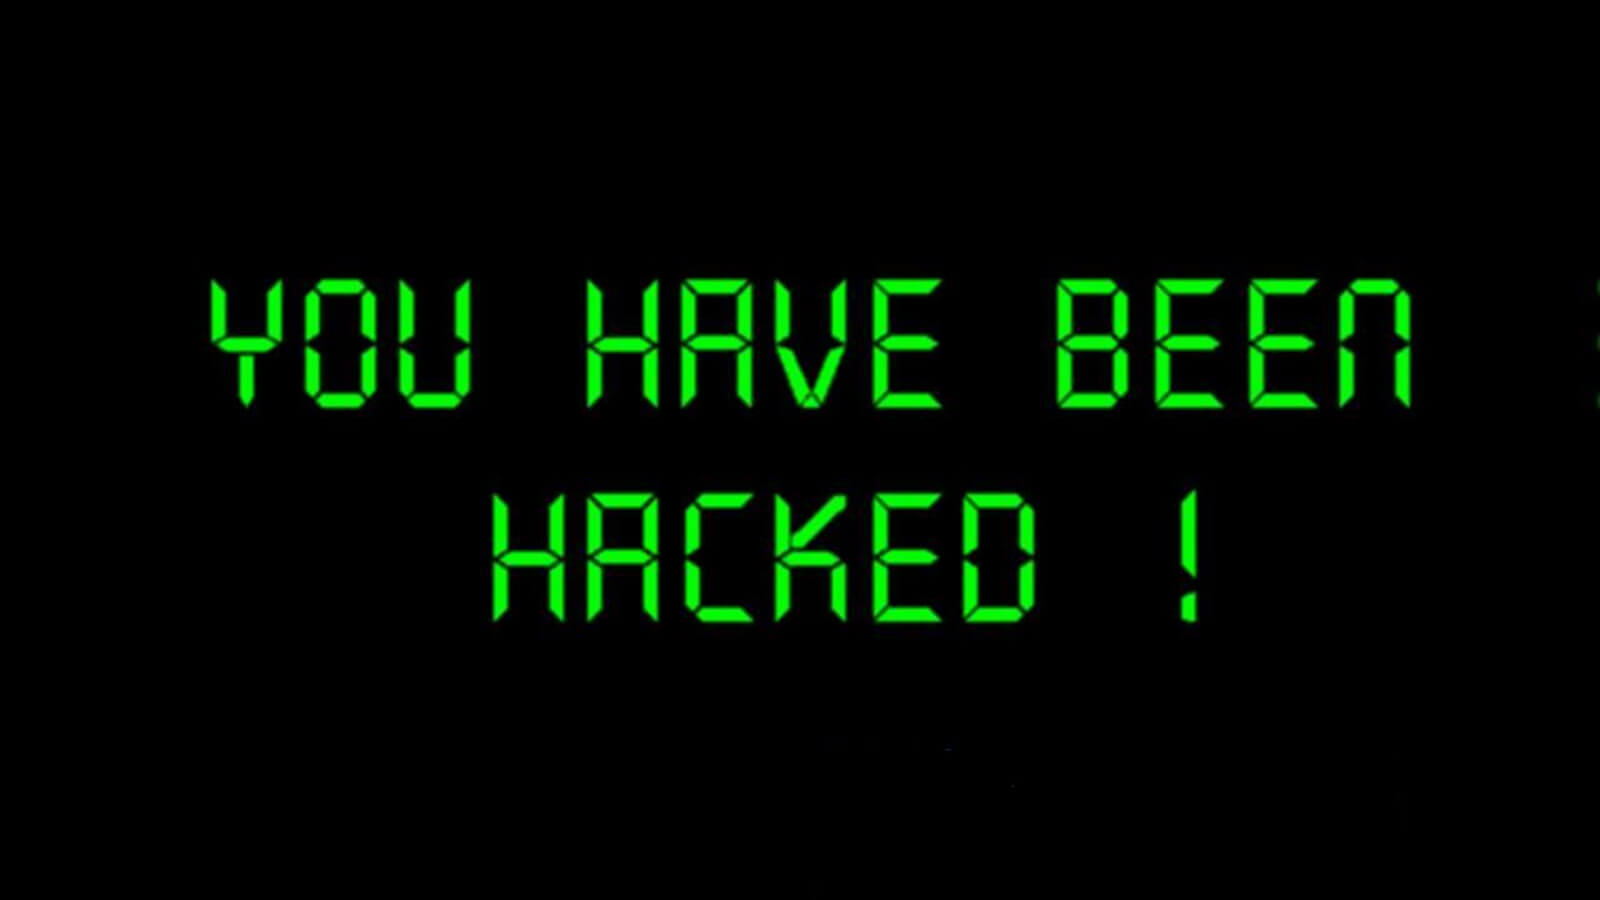 Hacking Warning